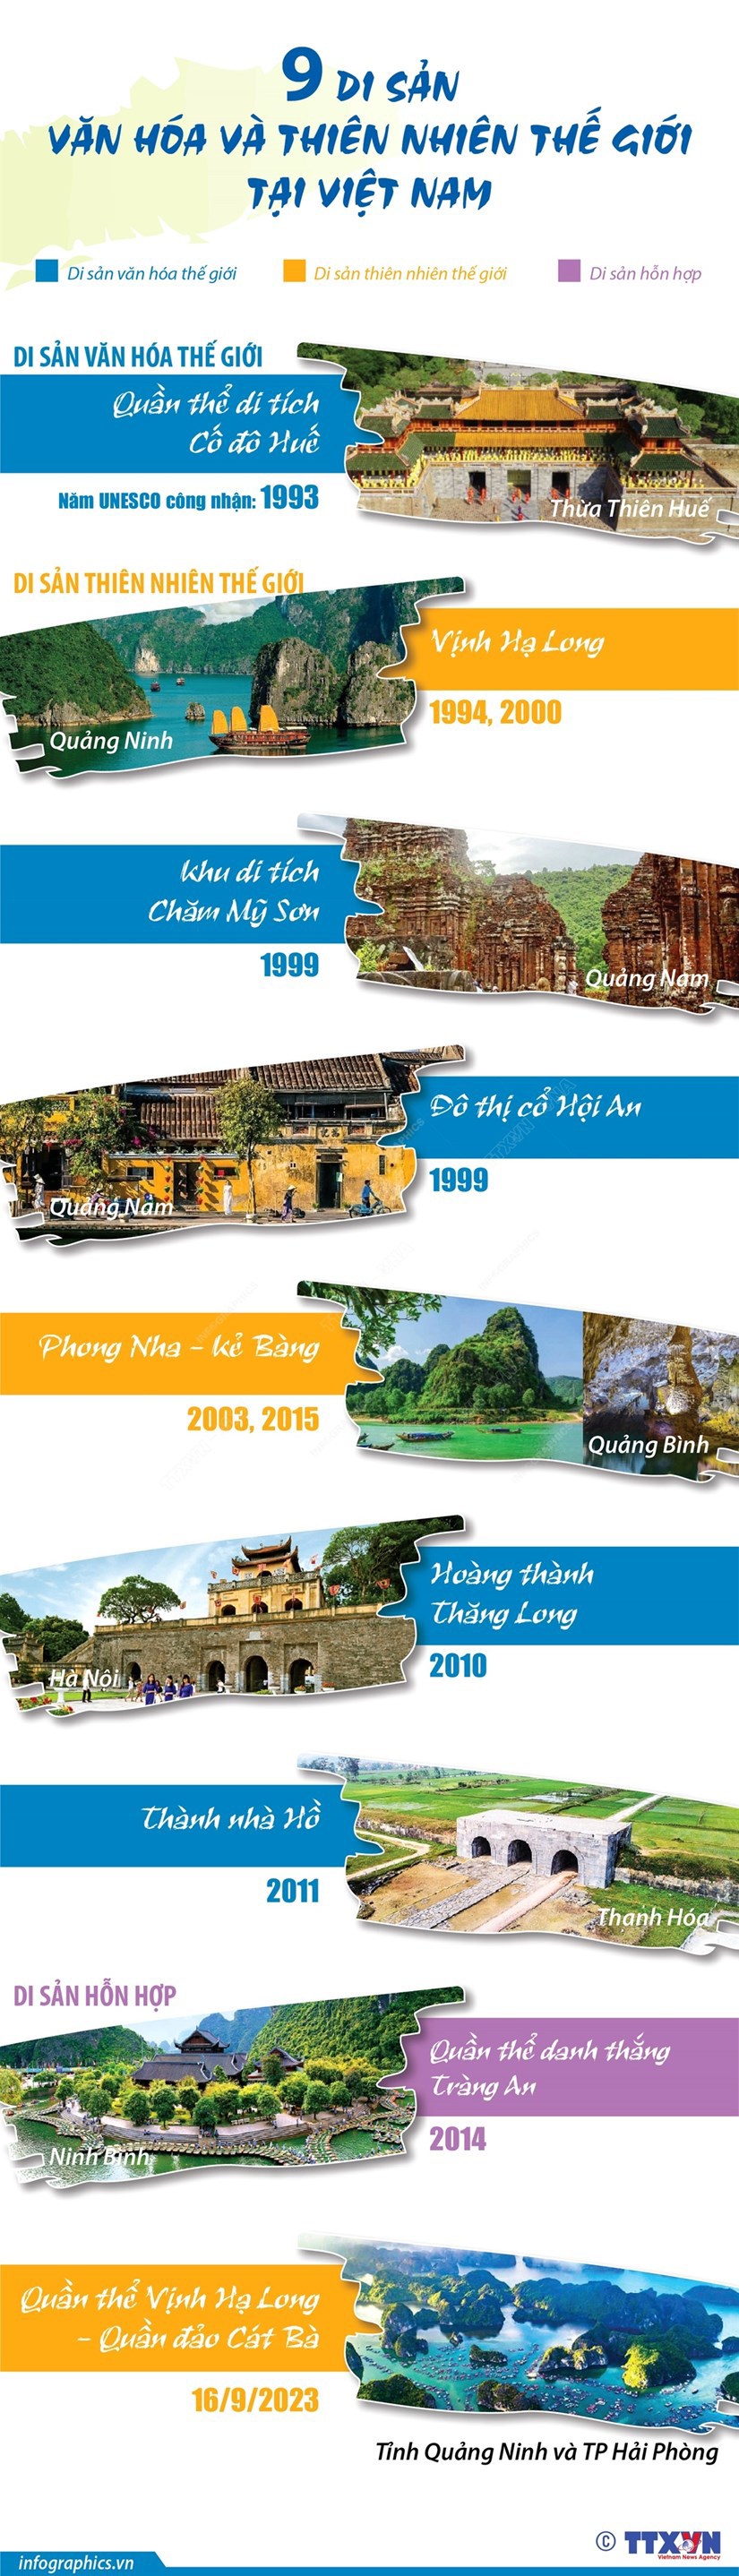 [Infographics] Chín Di sản Văn hóa và Thiên nhiên thế giới ở Việt Nam - Ảnh 1